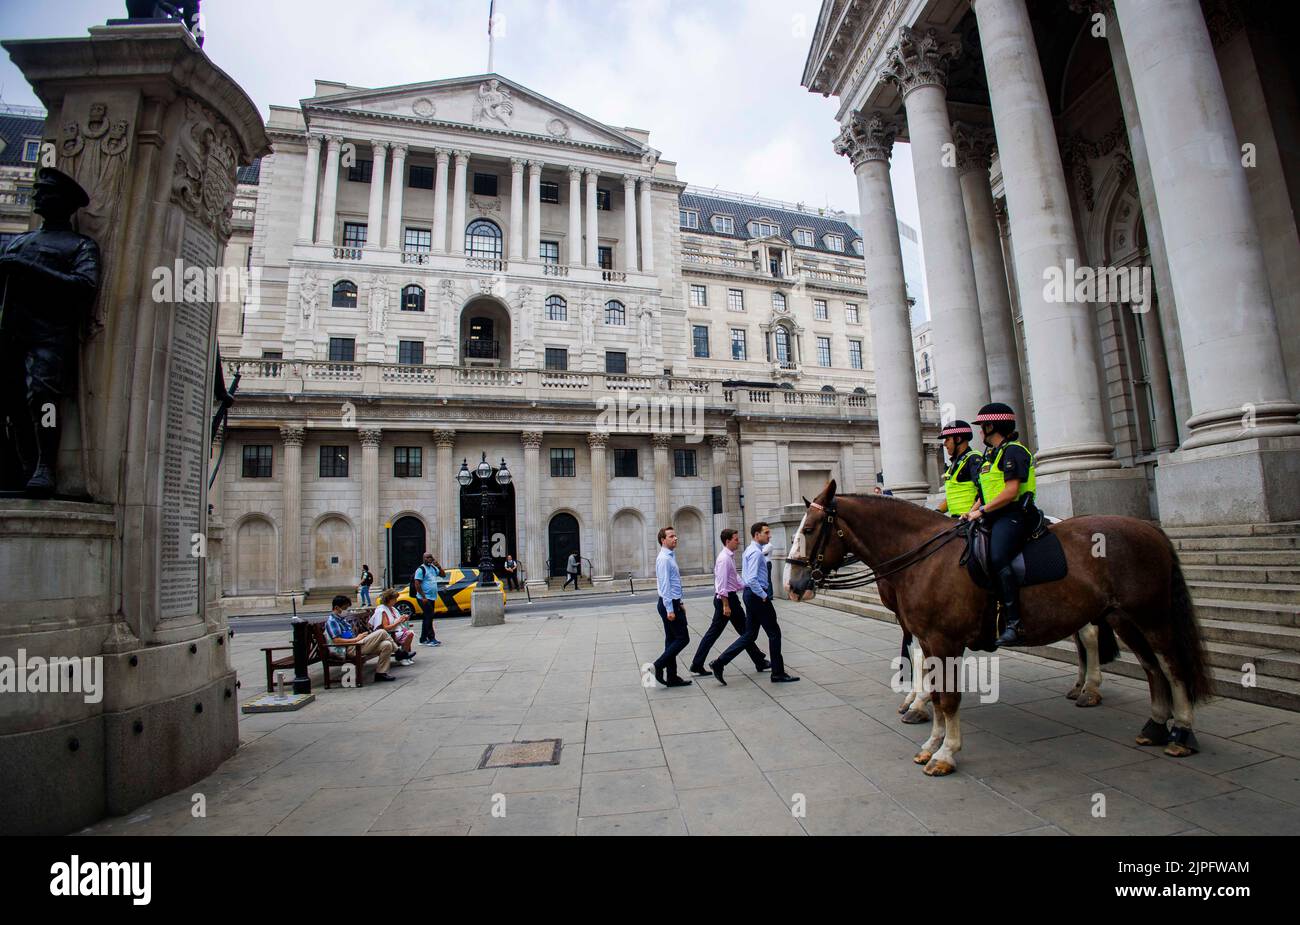 La Banca d'Inghilterra in Threadneedle Street è la banca centrale del Regno Unito. Recentemente ha aumentato il tasso di interesse al 1,75%. Foto Stock